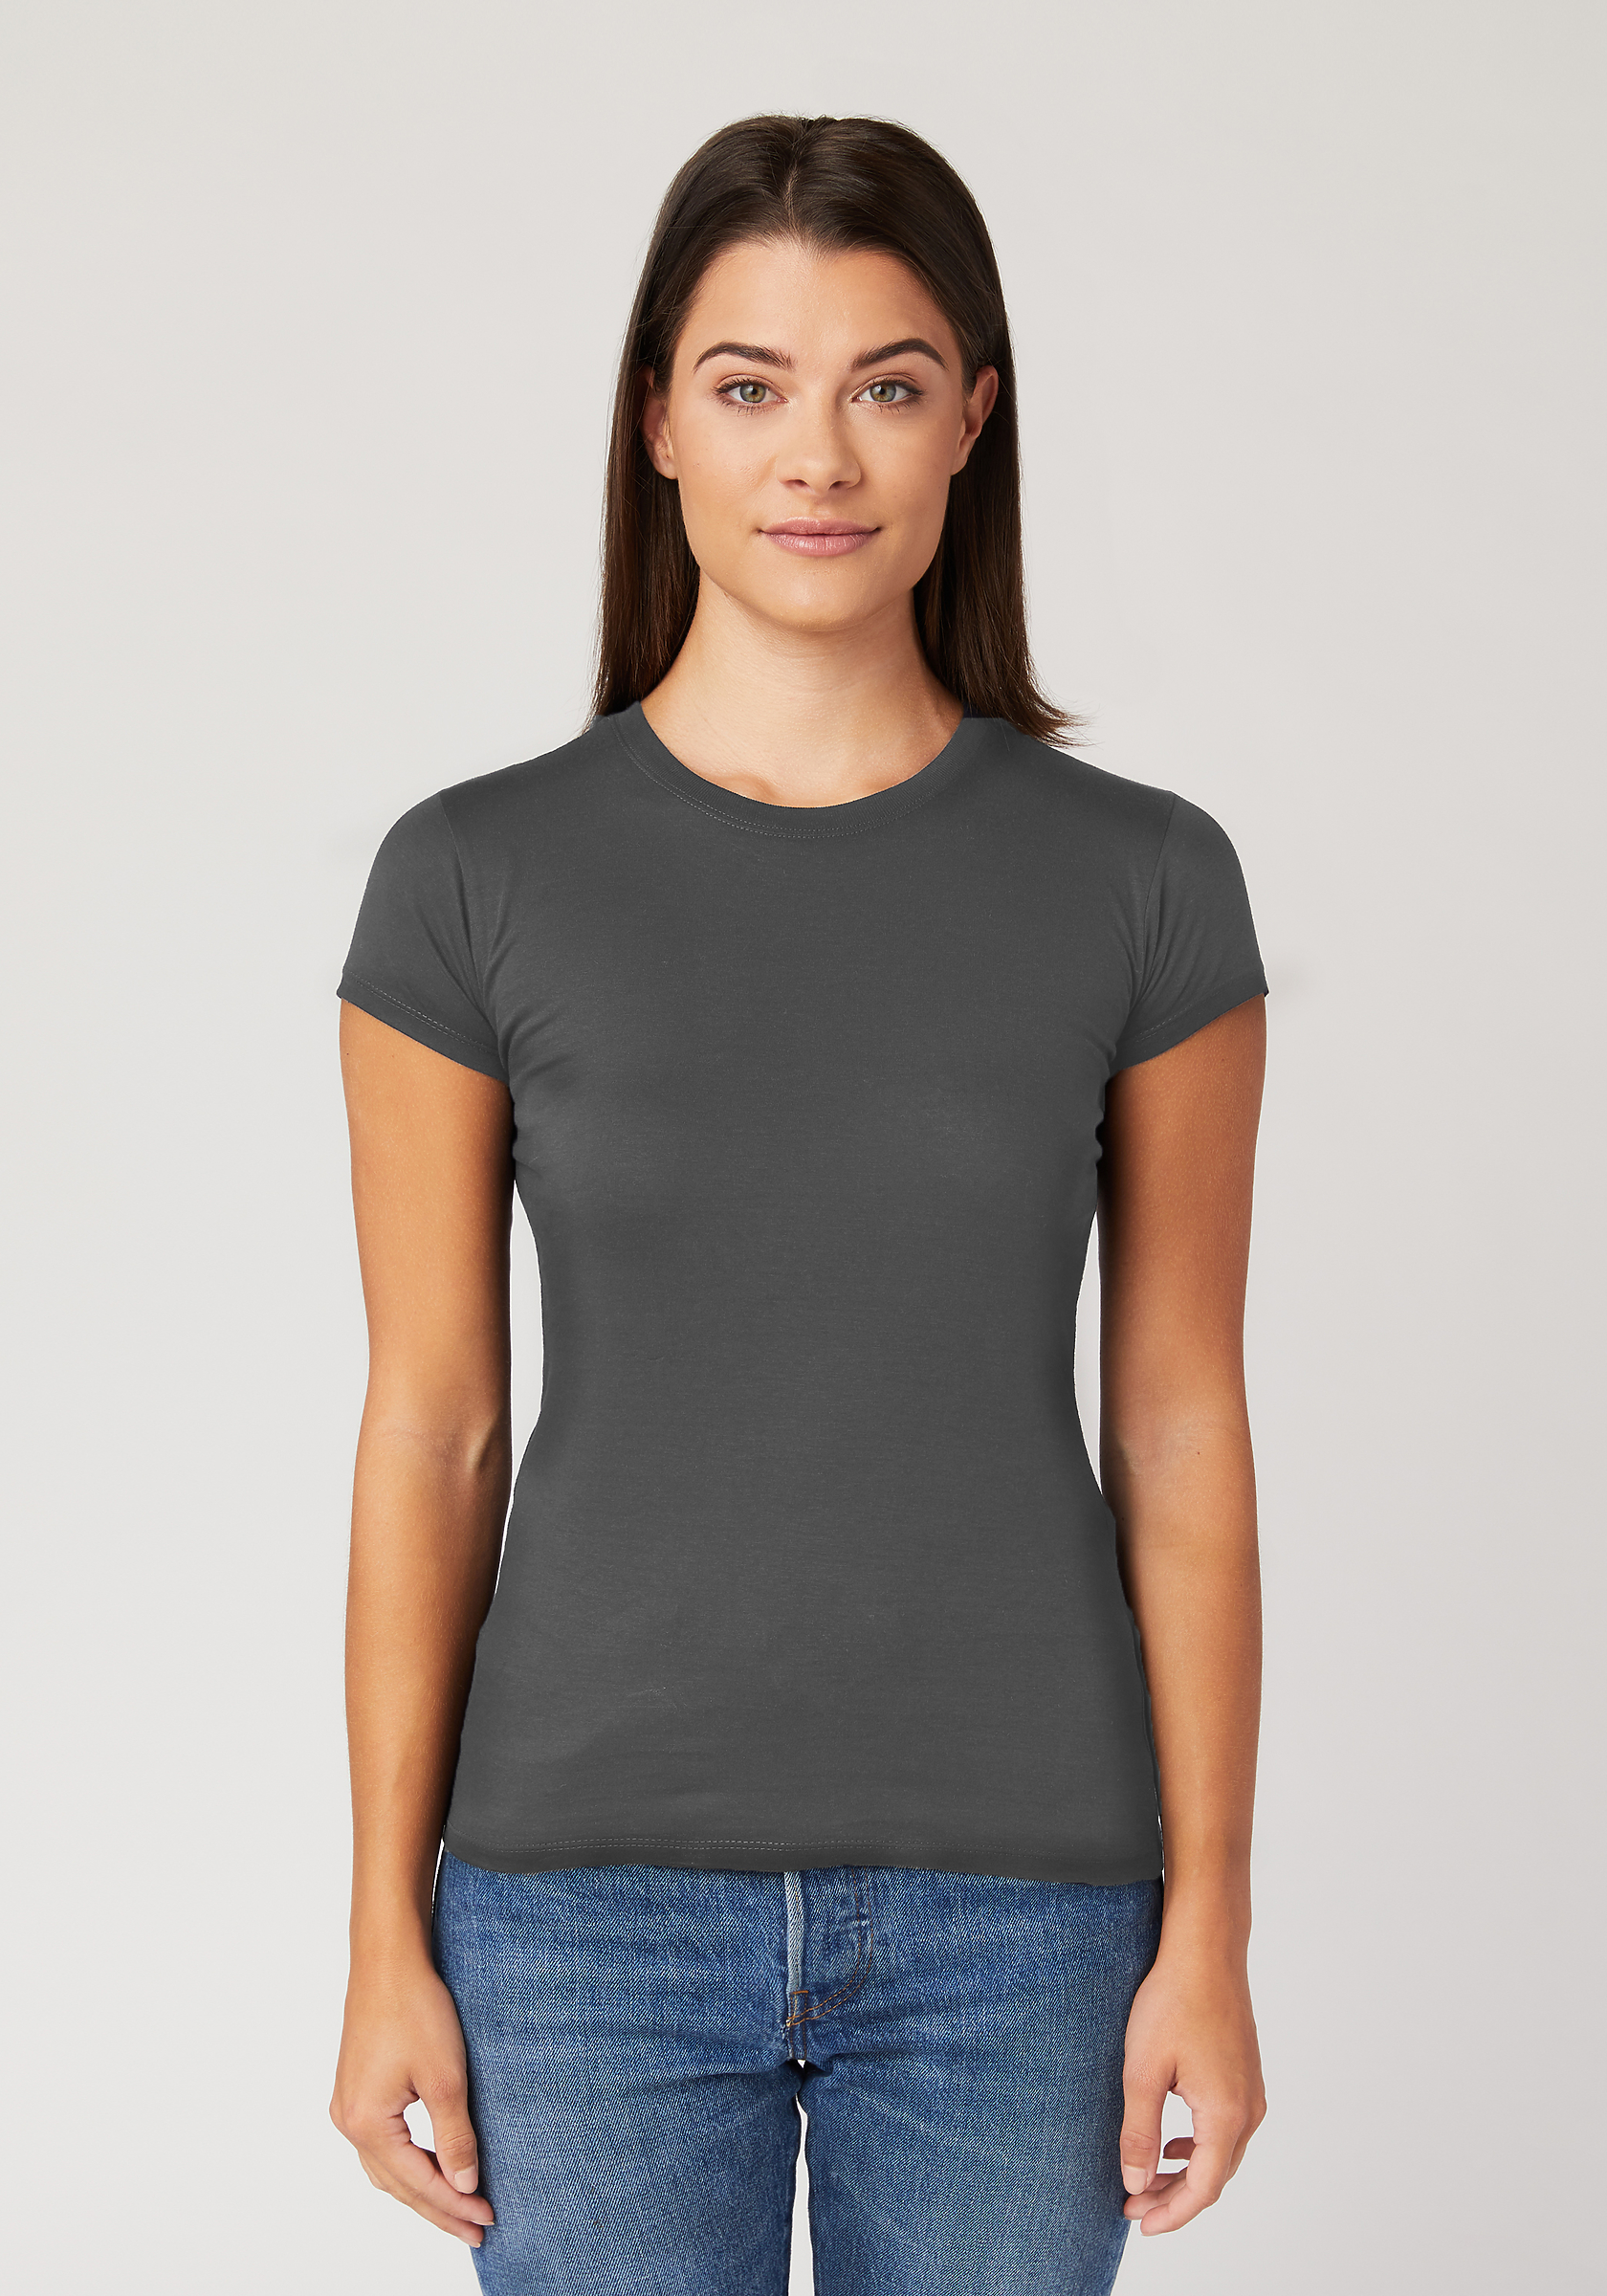 kiezen Ronde Republikeinse partij Women's Slim Fit T-Shirt | Cotton Heritage